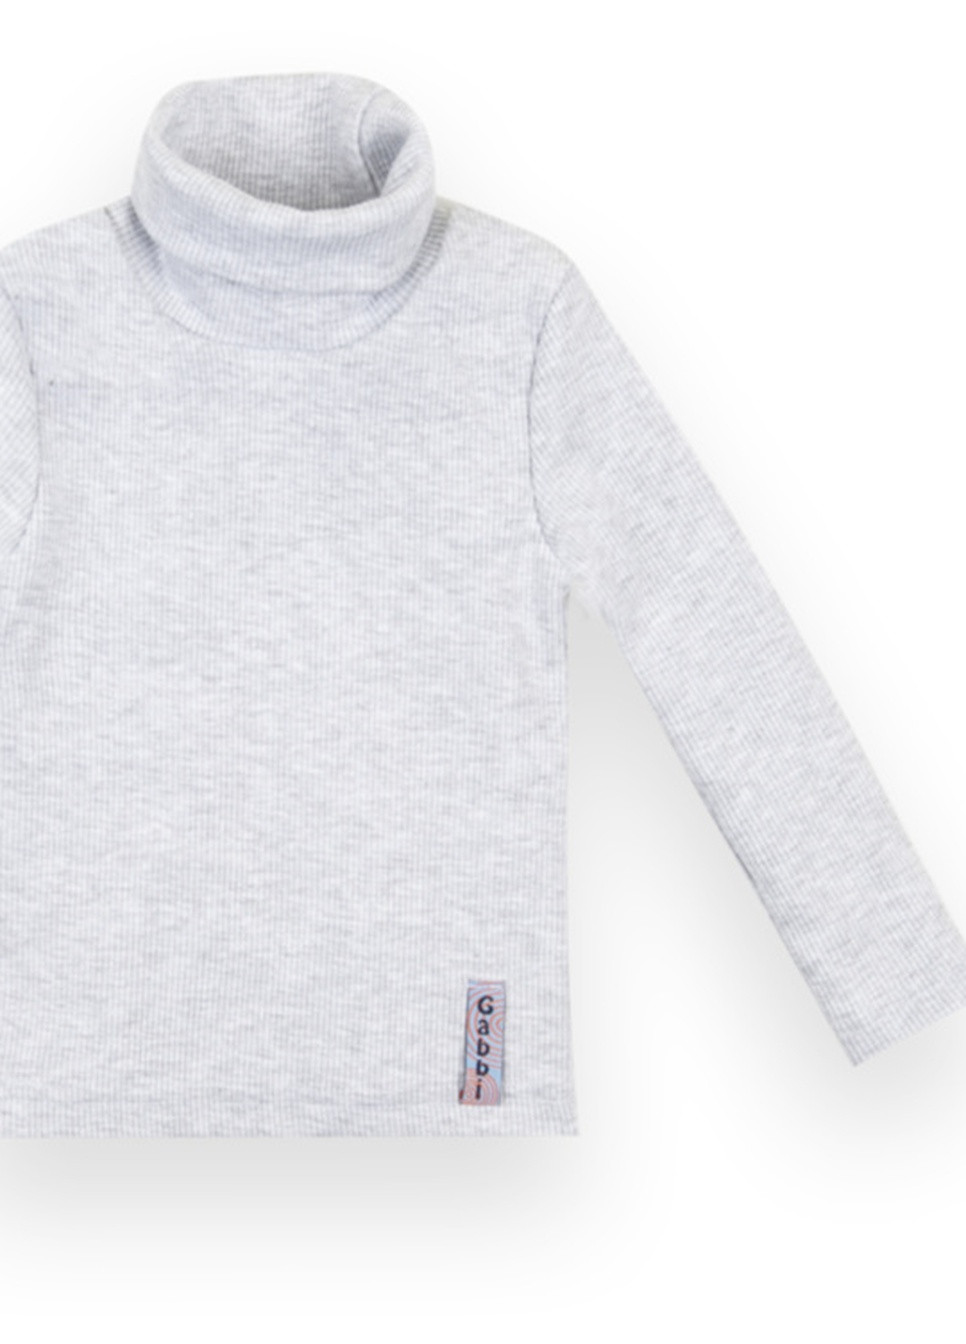 Белый демисезонный детский свитер sv-21-10-1 *стиль* Габби